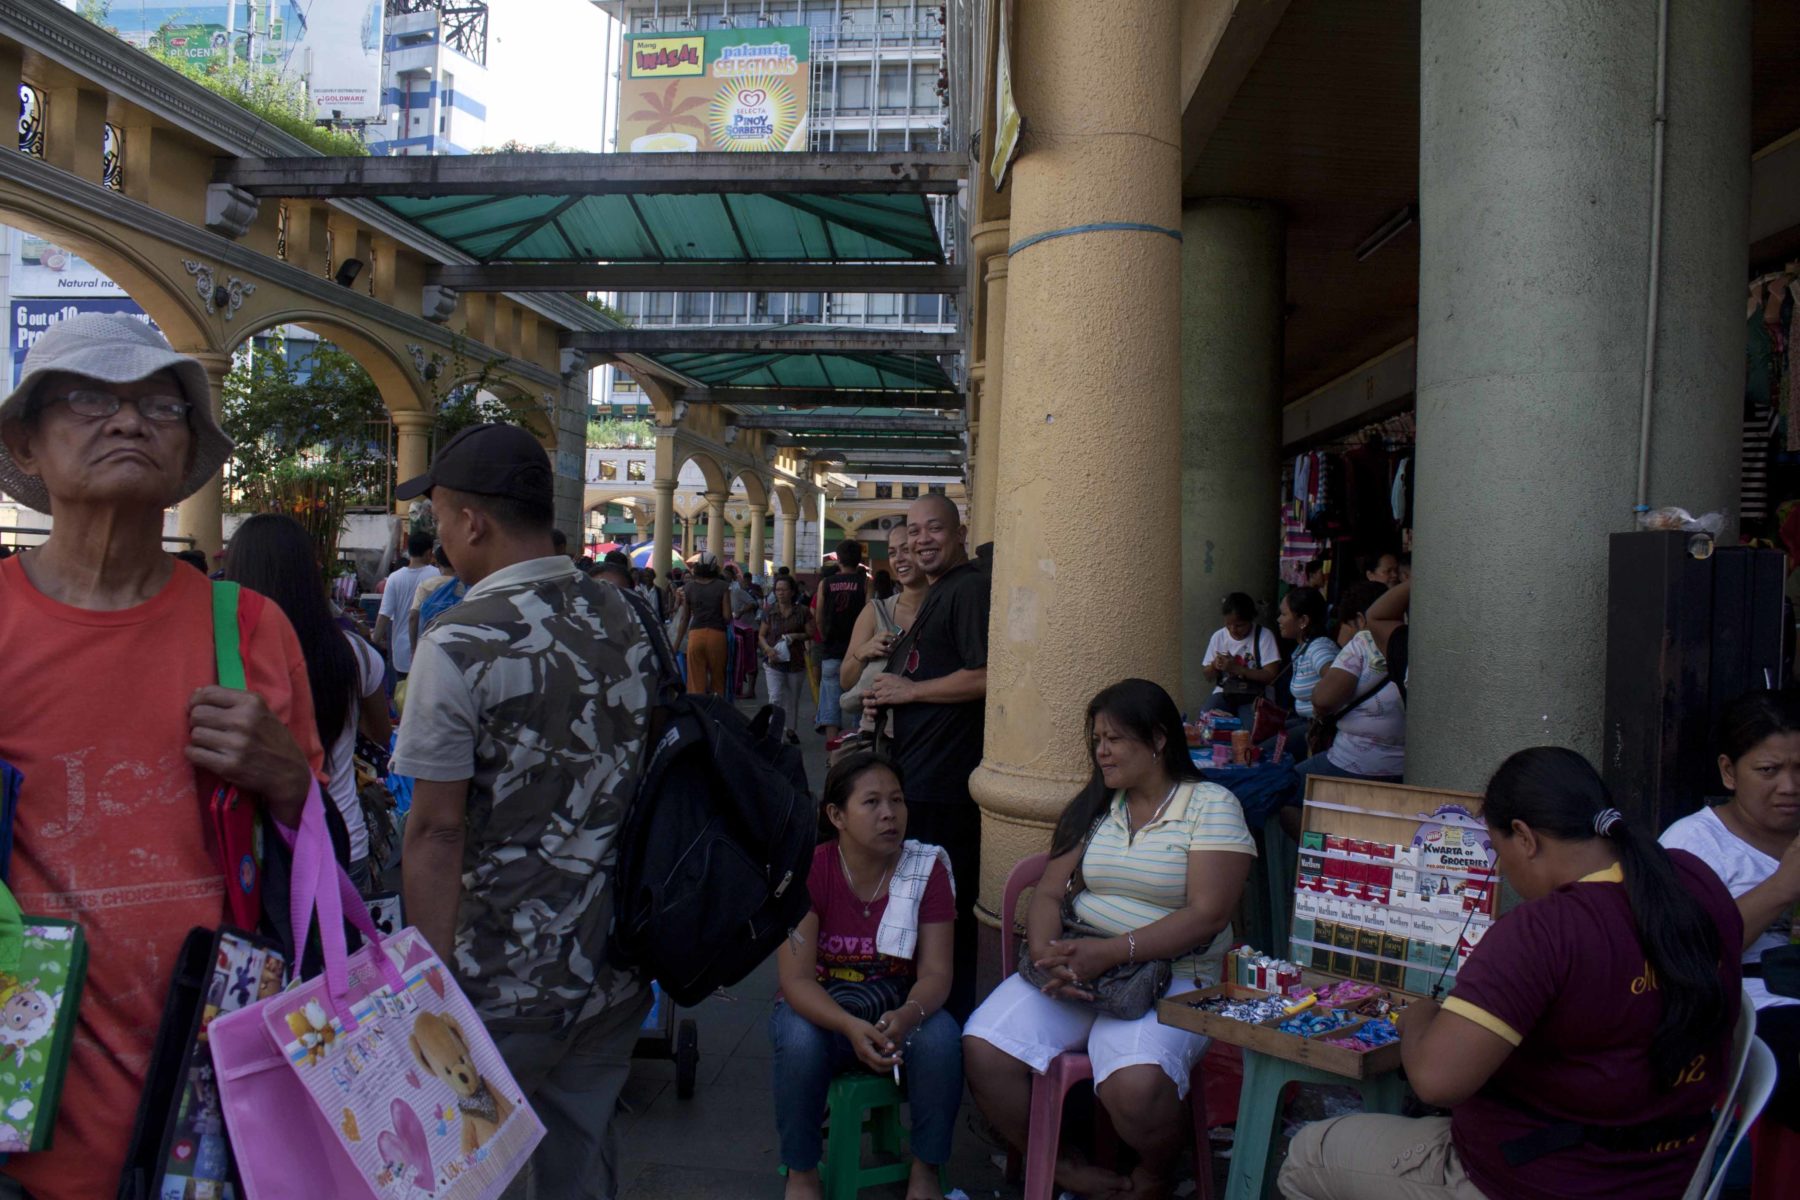 Frauen verdienen weniger als Männer und schultern die Mehrfachbelastung von Familie, Haushalt und Lohnarbeit: Tabakverkäuferin in Manila. © Lilli Breininger